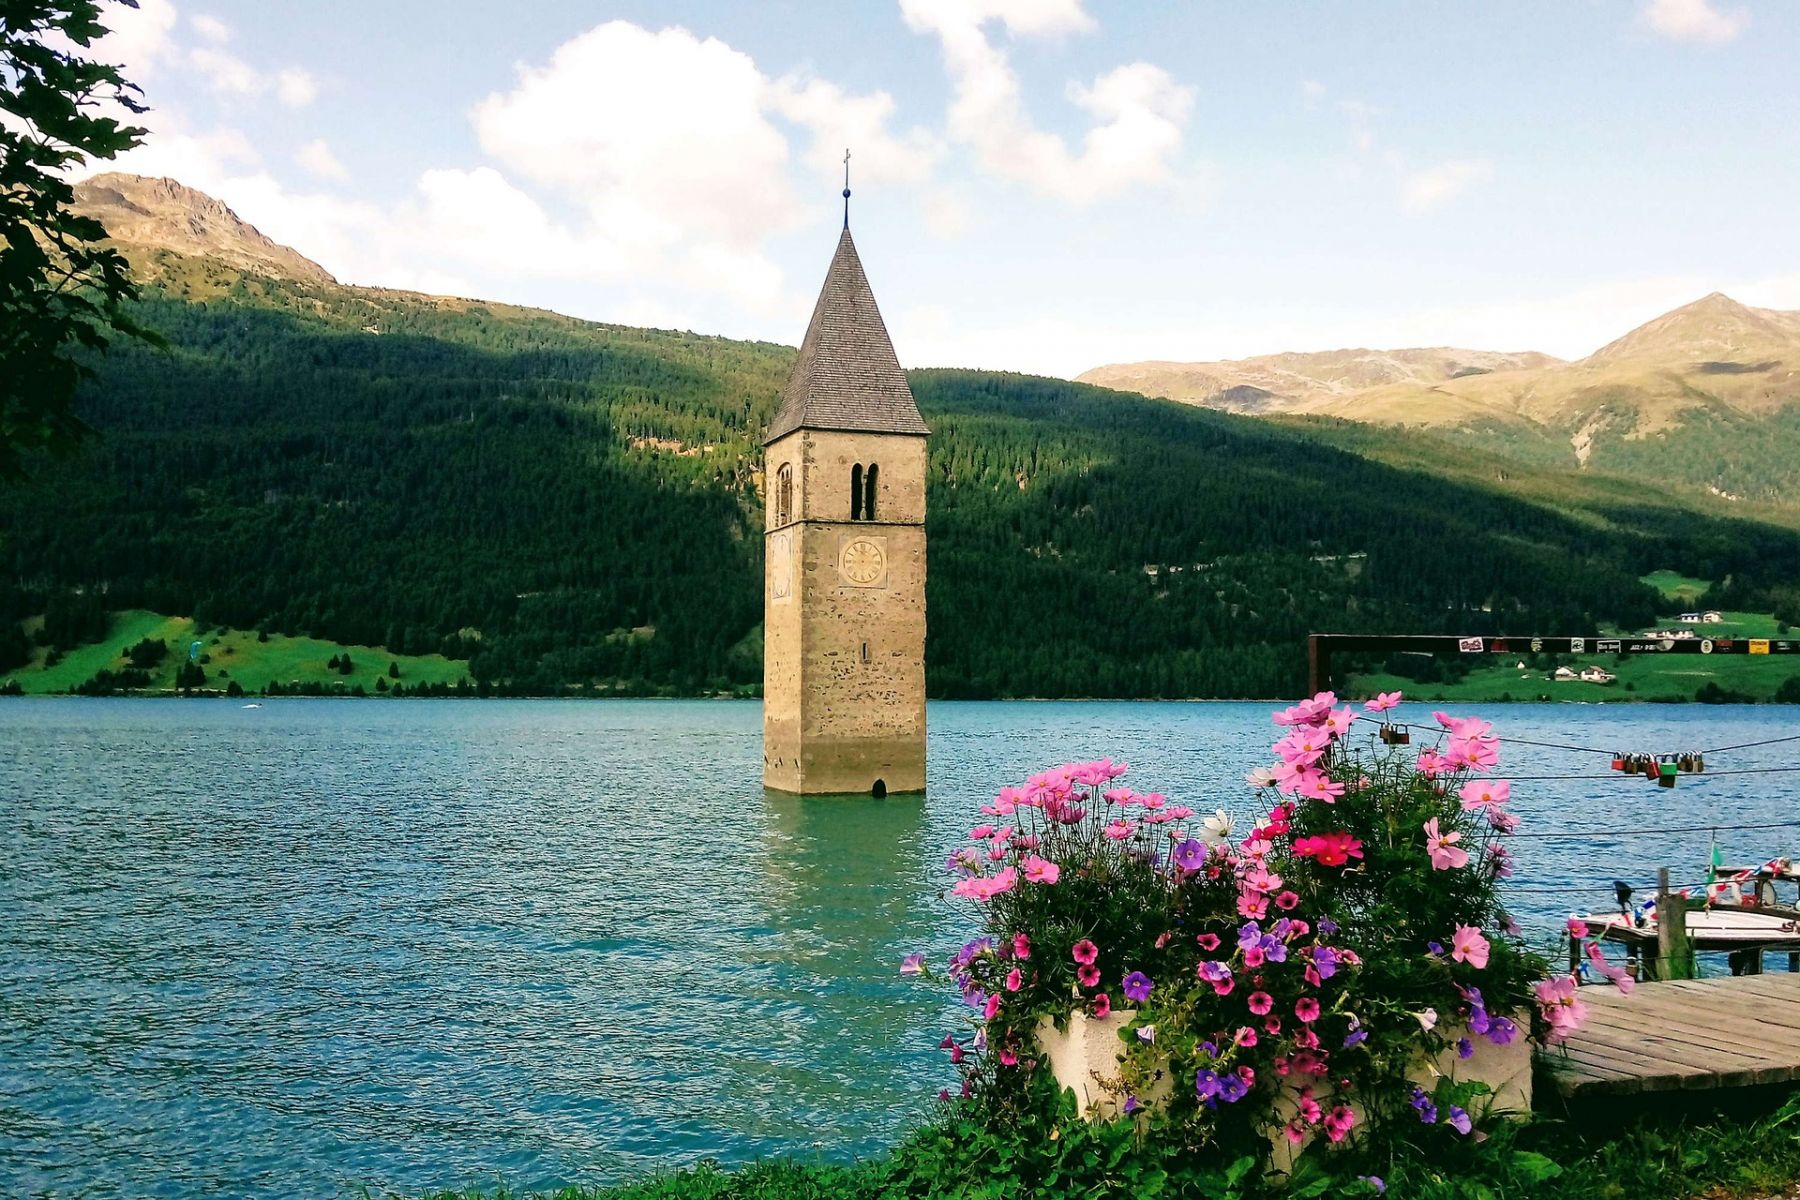 Vào năm 1950, một ngôi làng mang tên Curon tại Italy đã bị nhấn chìm để xây hồ chứa nước